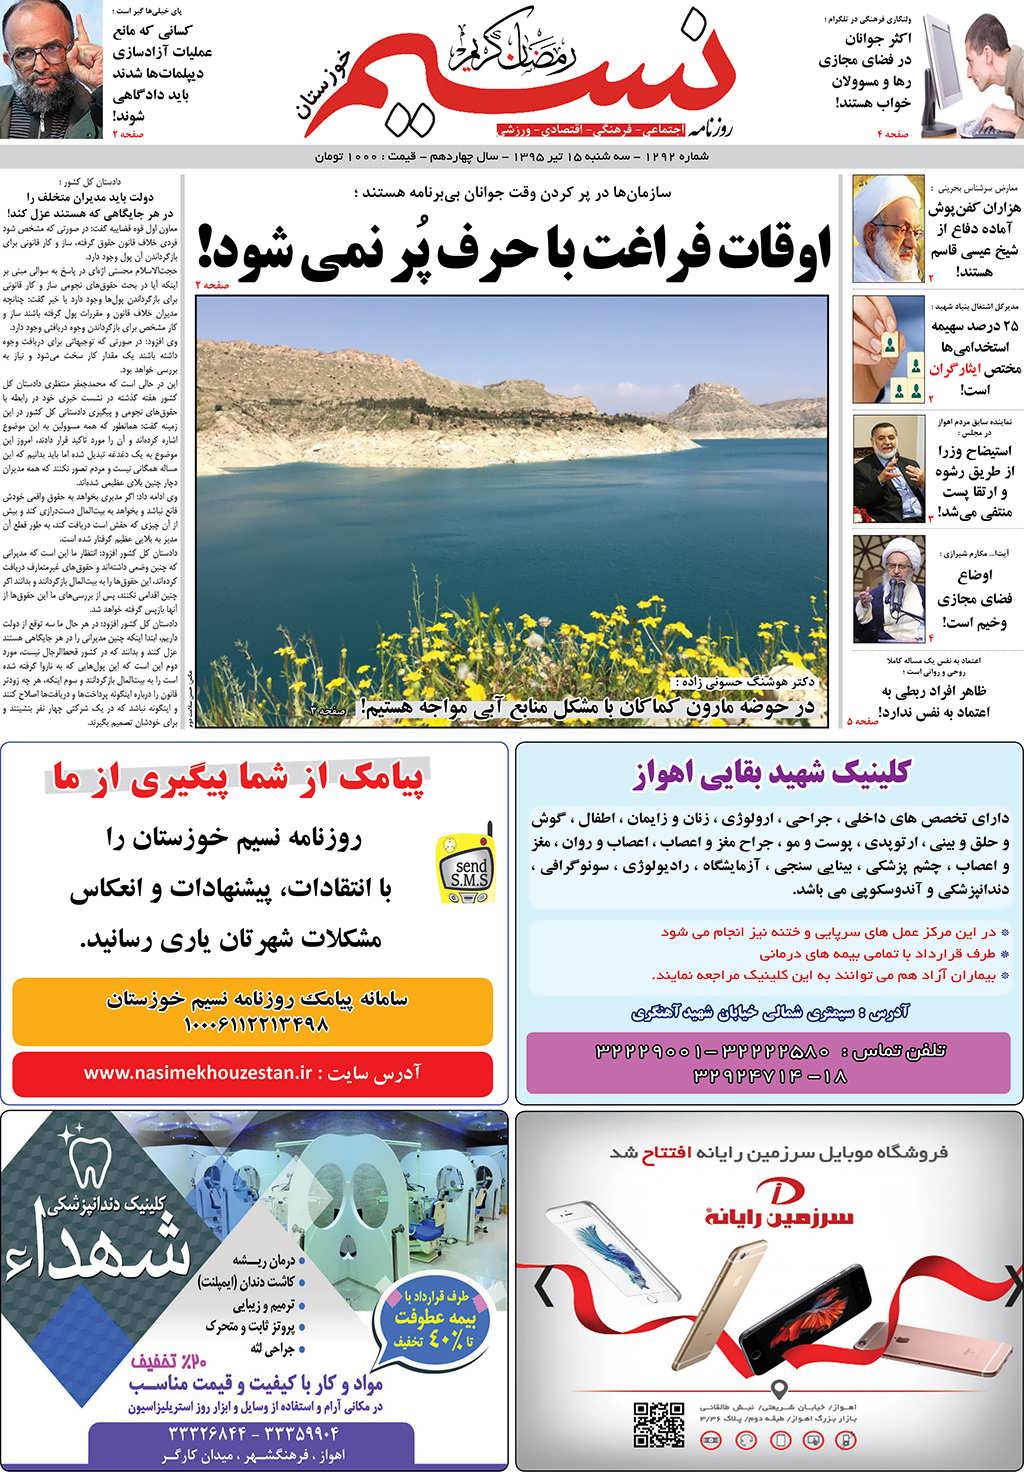 صفحه اصلی روزنامه نسیم شماره 1292